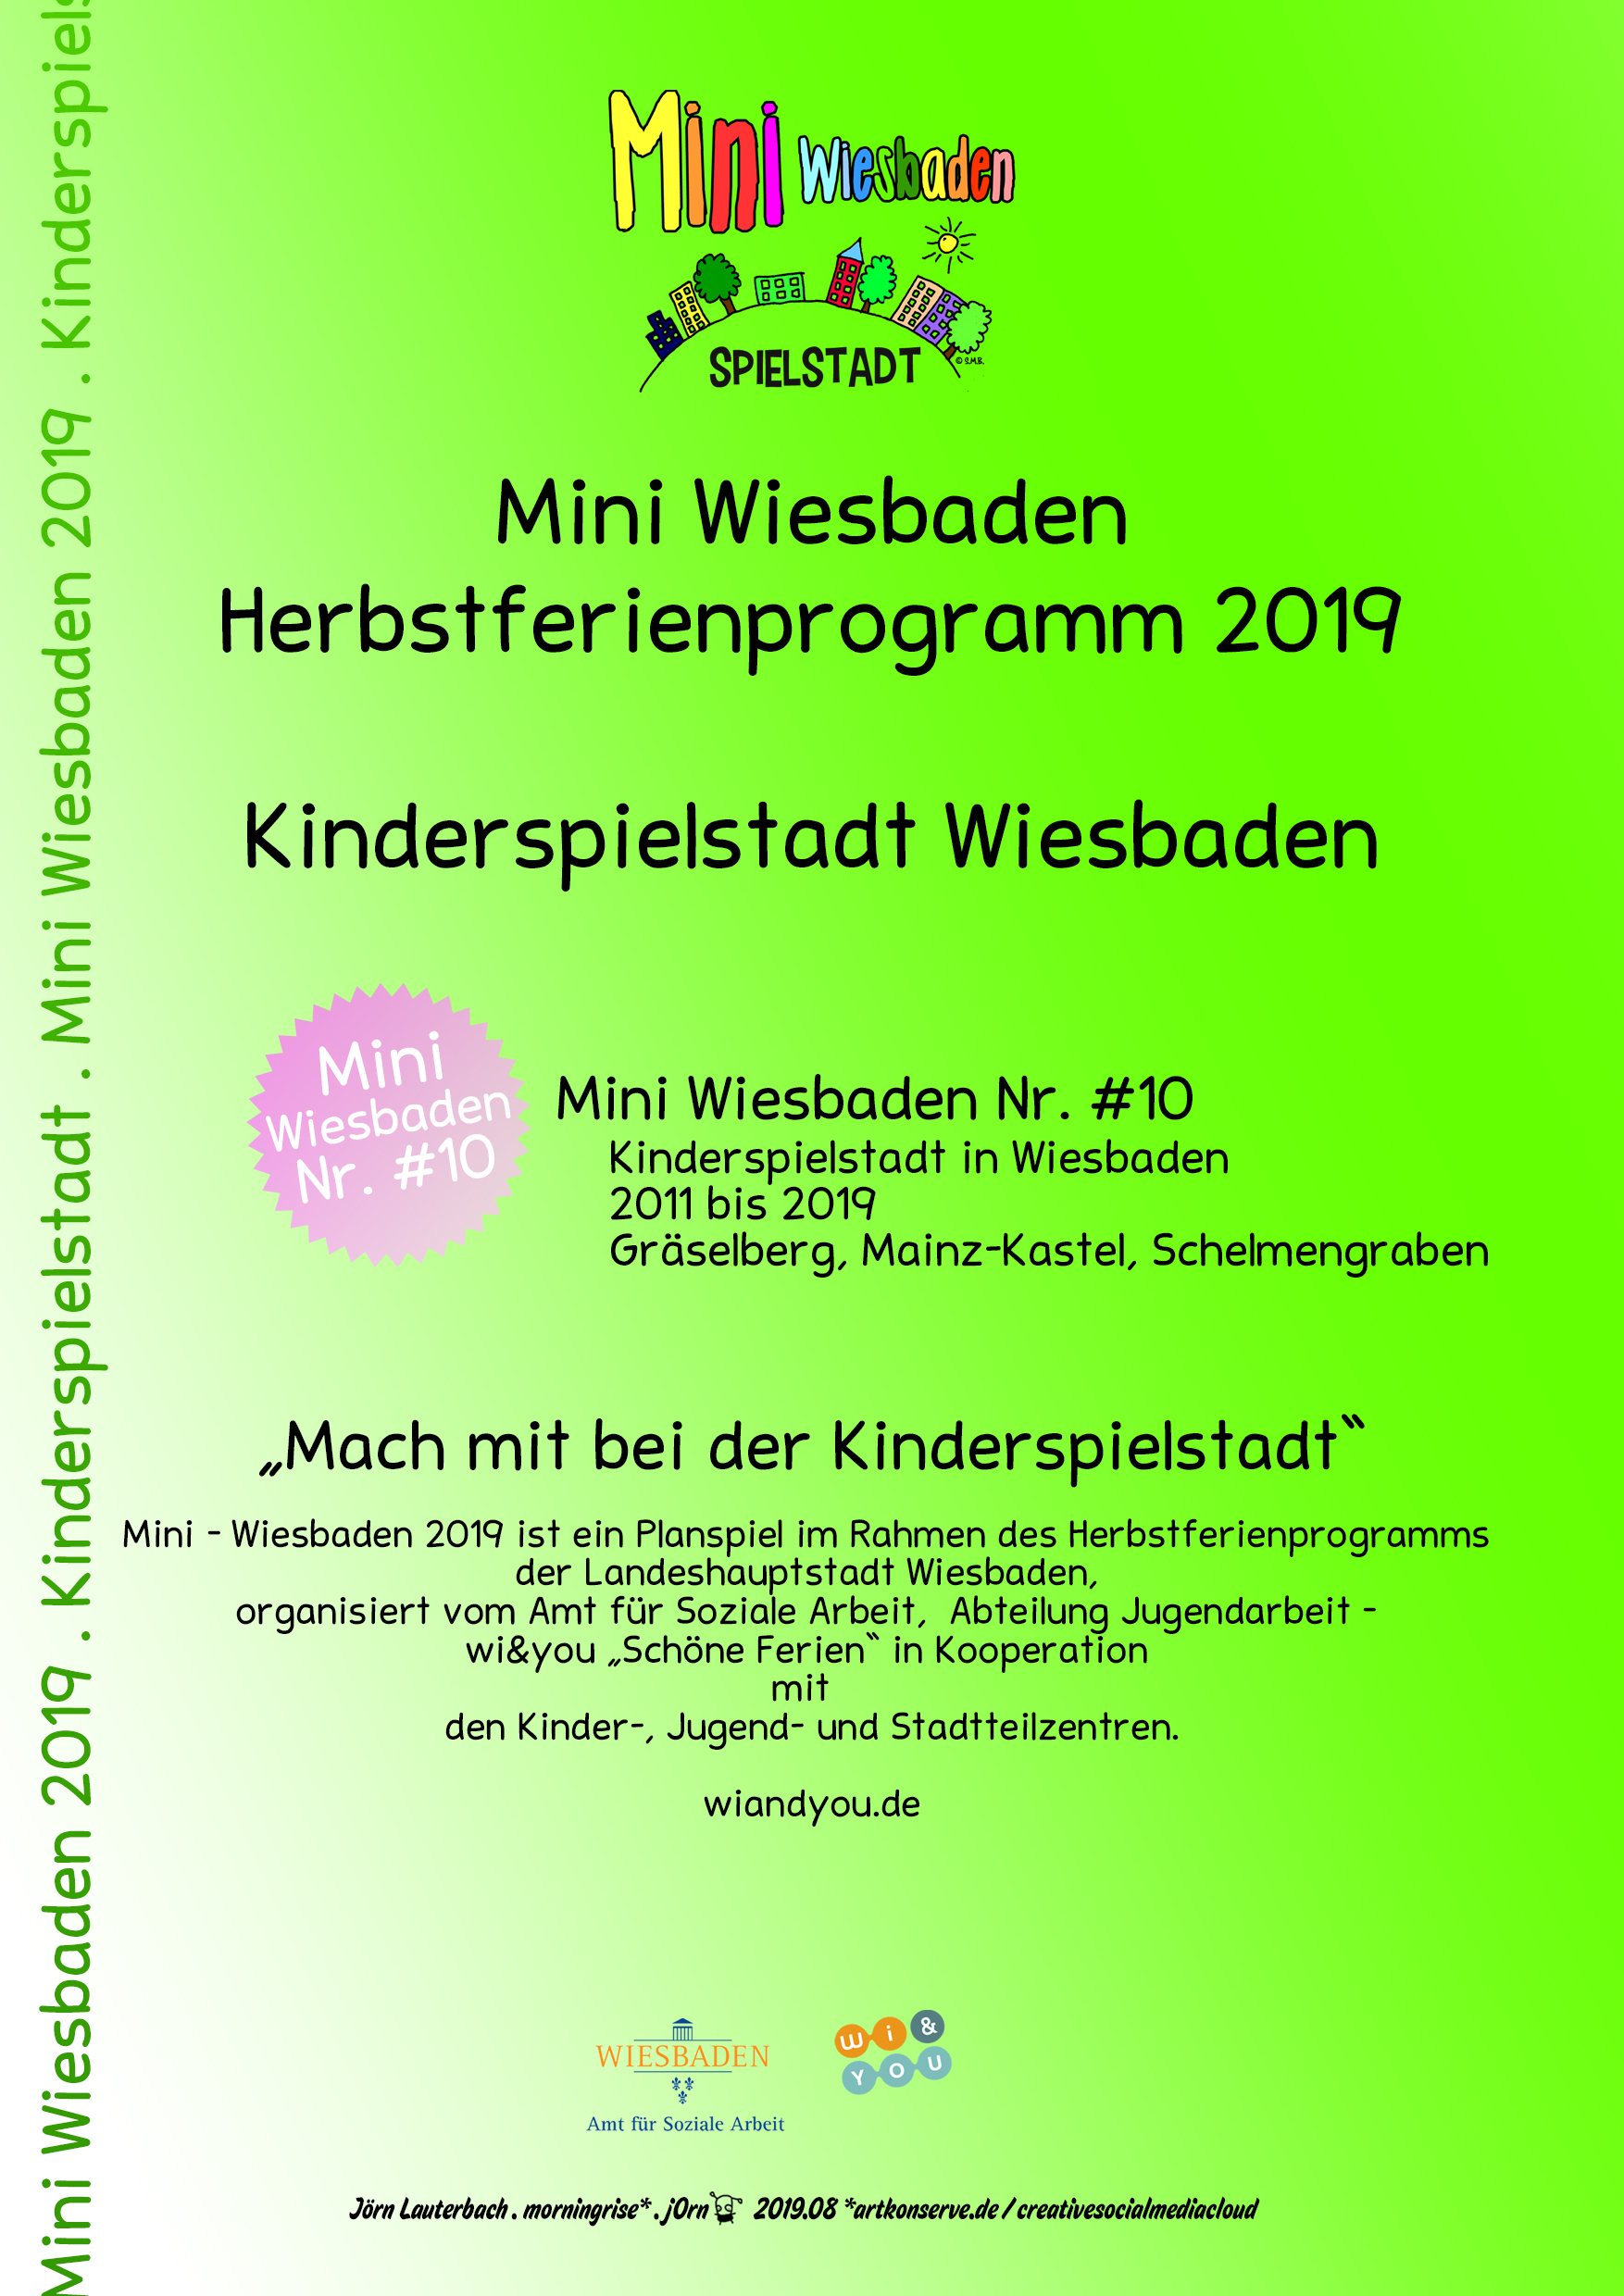 Mini Wiesbaden 2019 . Nr. #10 . Kinderspielstadt in Wiesbaden . Kooperationsprojekt . 
Mini Wiesbaden Nr. #10 . Kinderspielstadt in Wiesbaden . 2011 bis 2019 . 
GrÃ¤selberg, Mainz-Kastel, Schelmengraben